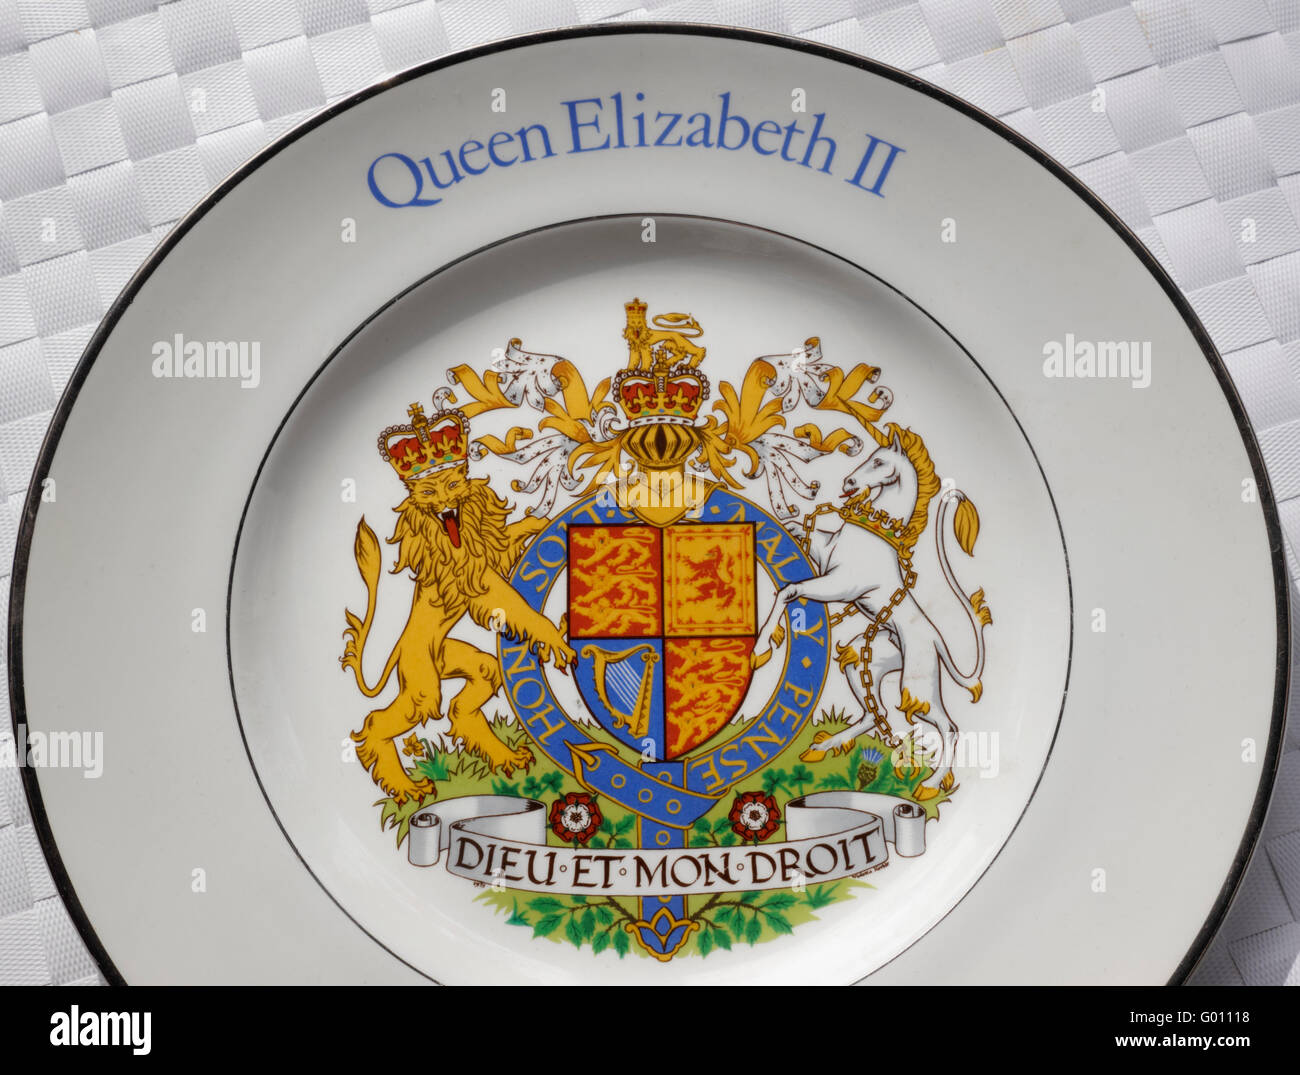 HM Queen Elizabeth II targa commemorativa con lo stemma ufficiale unico della Regina DIEU ET MON DROIT ('Dio e il mio diritto') Foto Stock